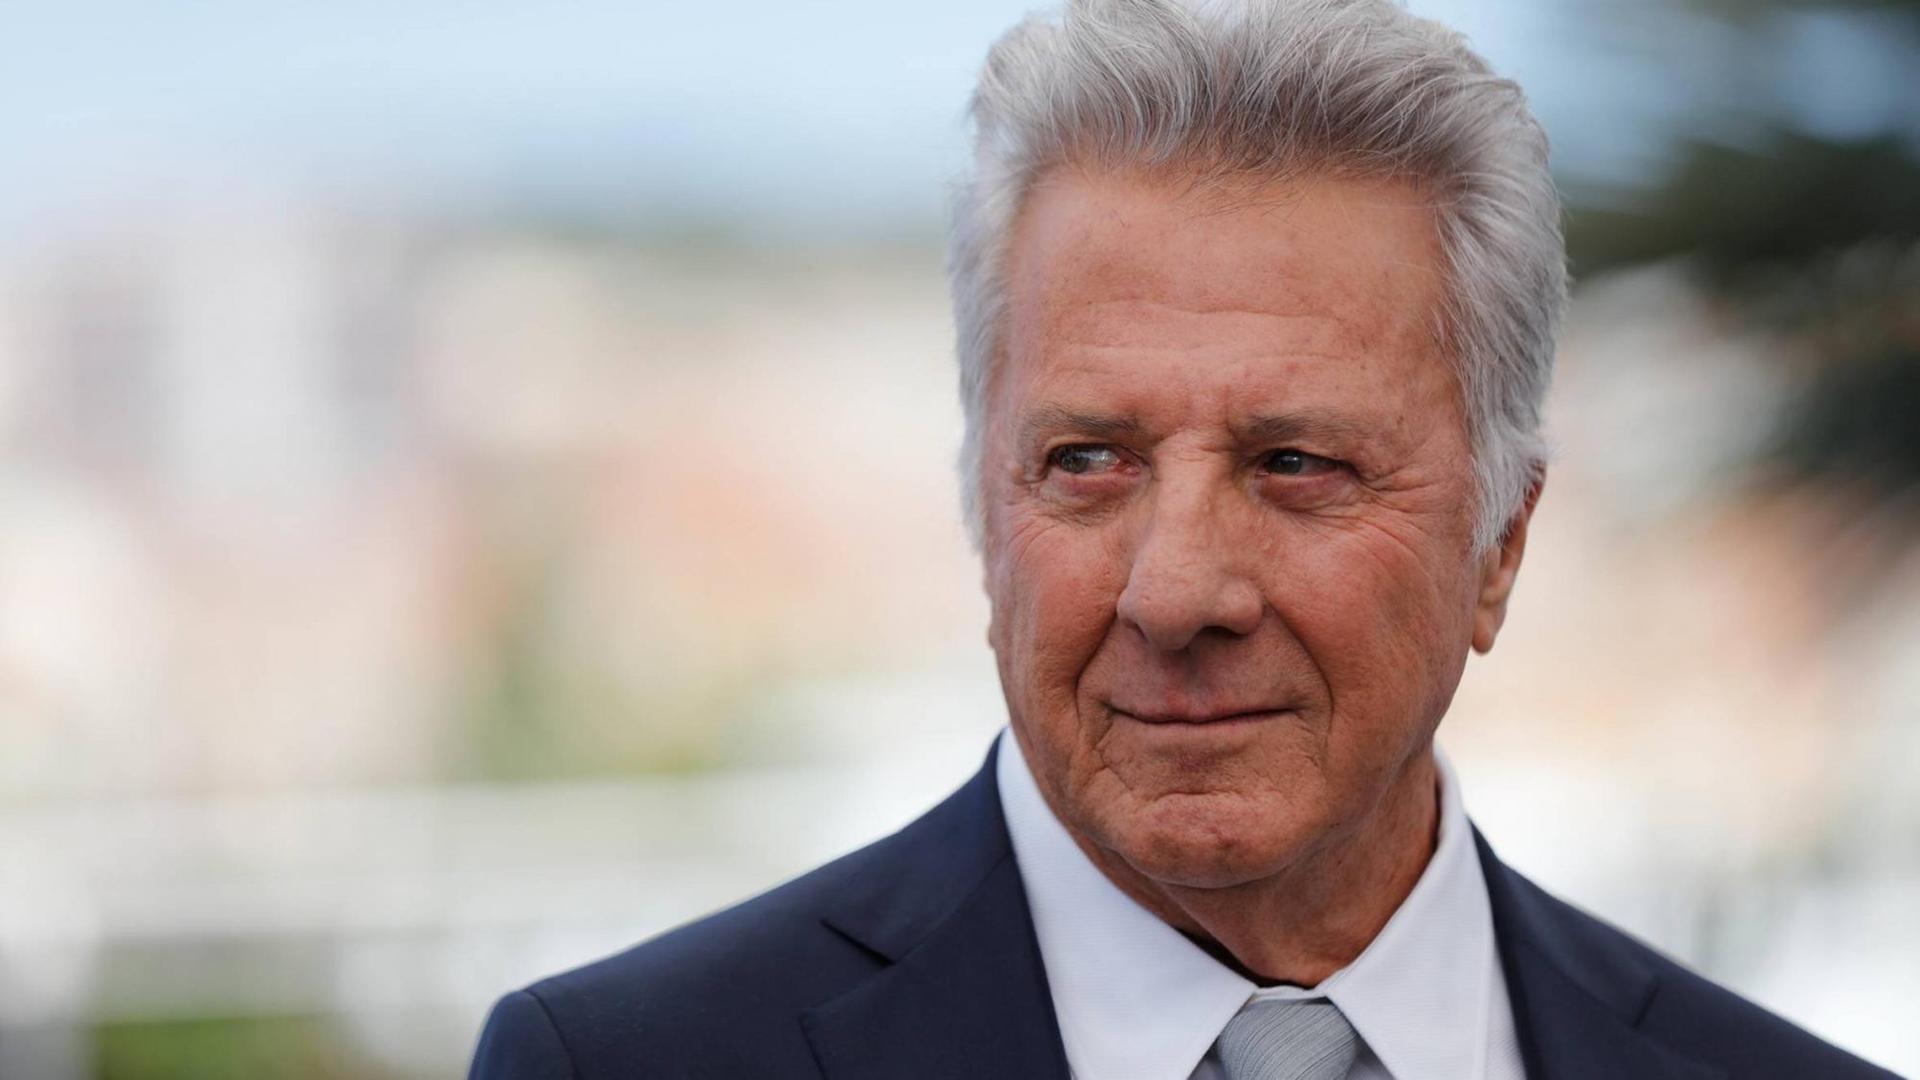 Portraifoto von Dustin Hoffman, aufgenommen beim Filmfestival in Cannes 2017.